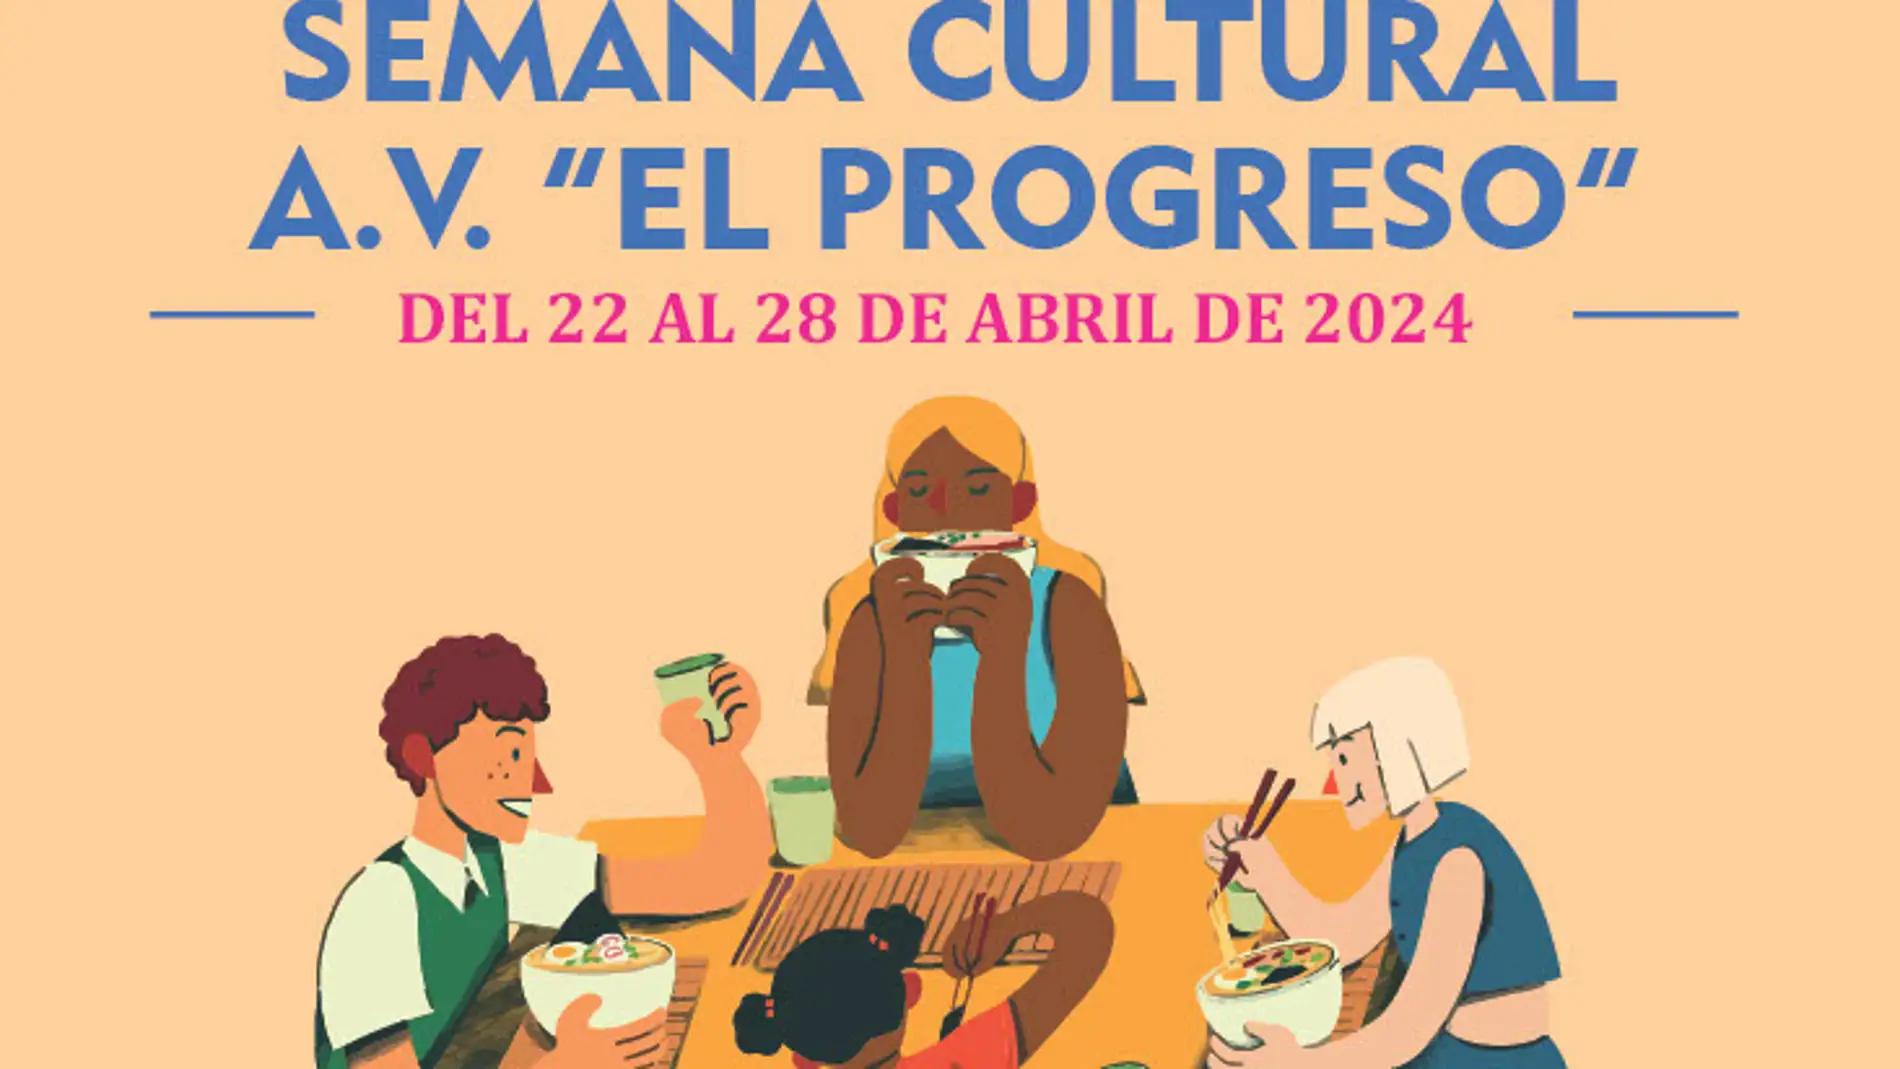 La asociación de vecinos "El Progreso" realiza su Semana Cultural del 22 al 28 de abril